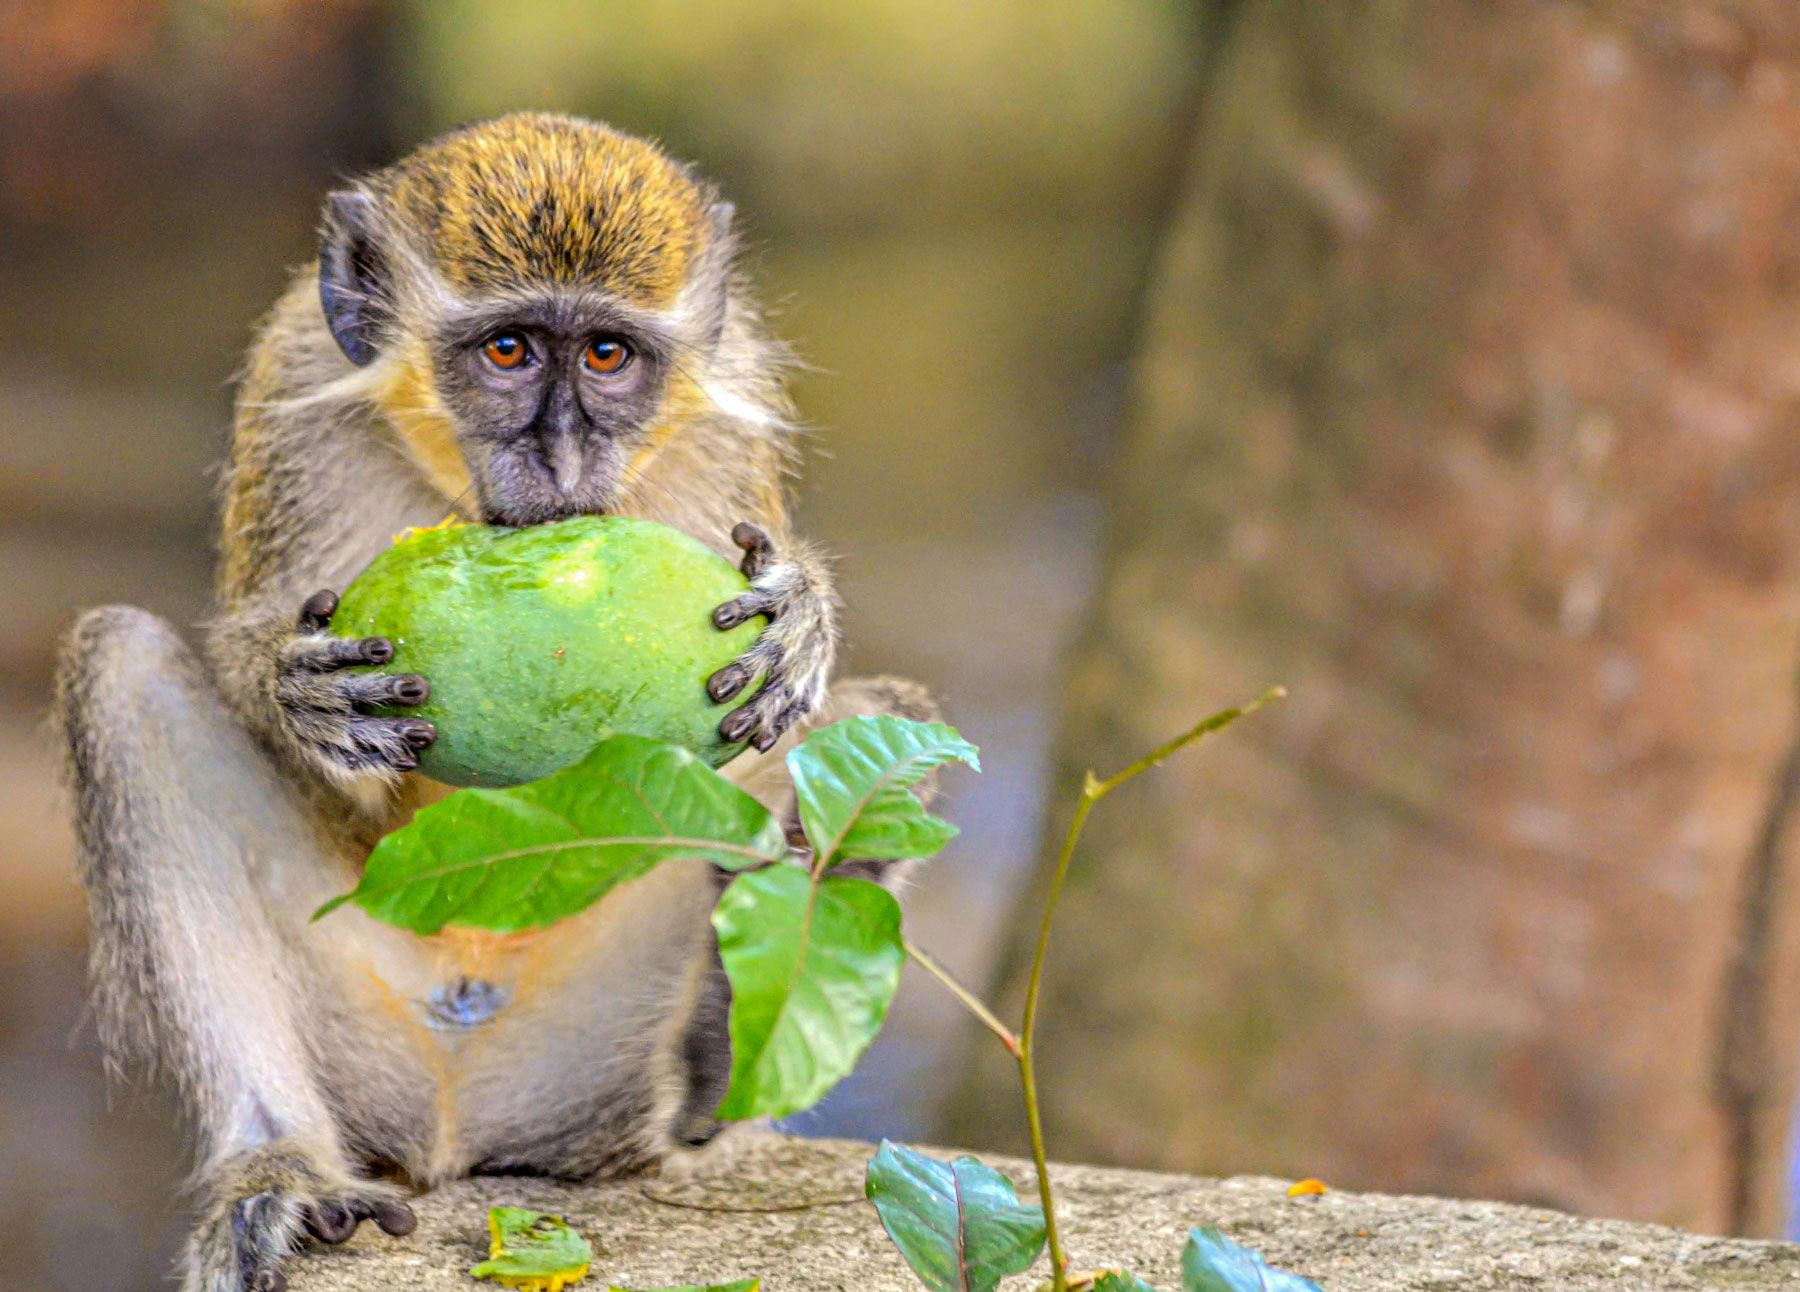 barbados green monkey eating fruit